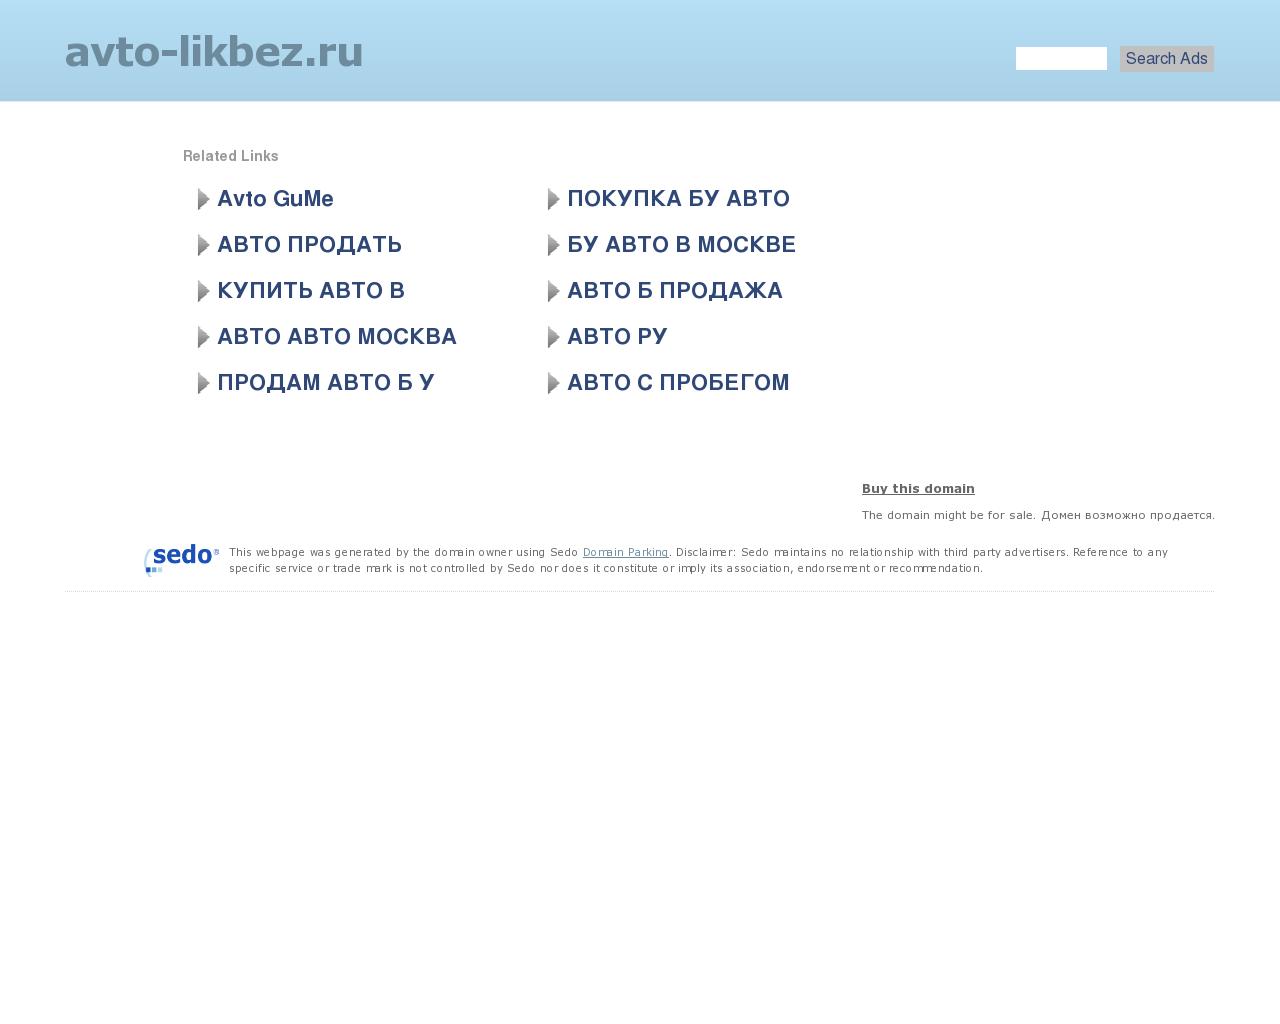 Изображение сайта avto-likbez.ru в разрешении 1280x1024